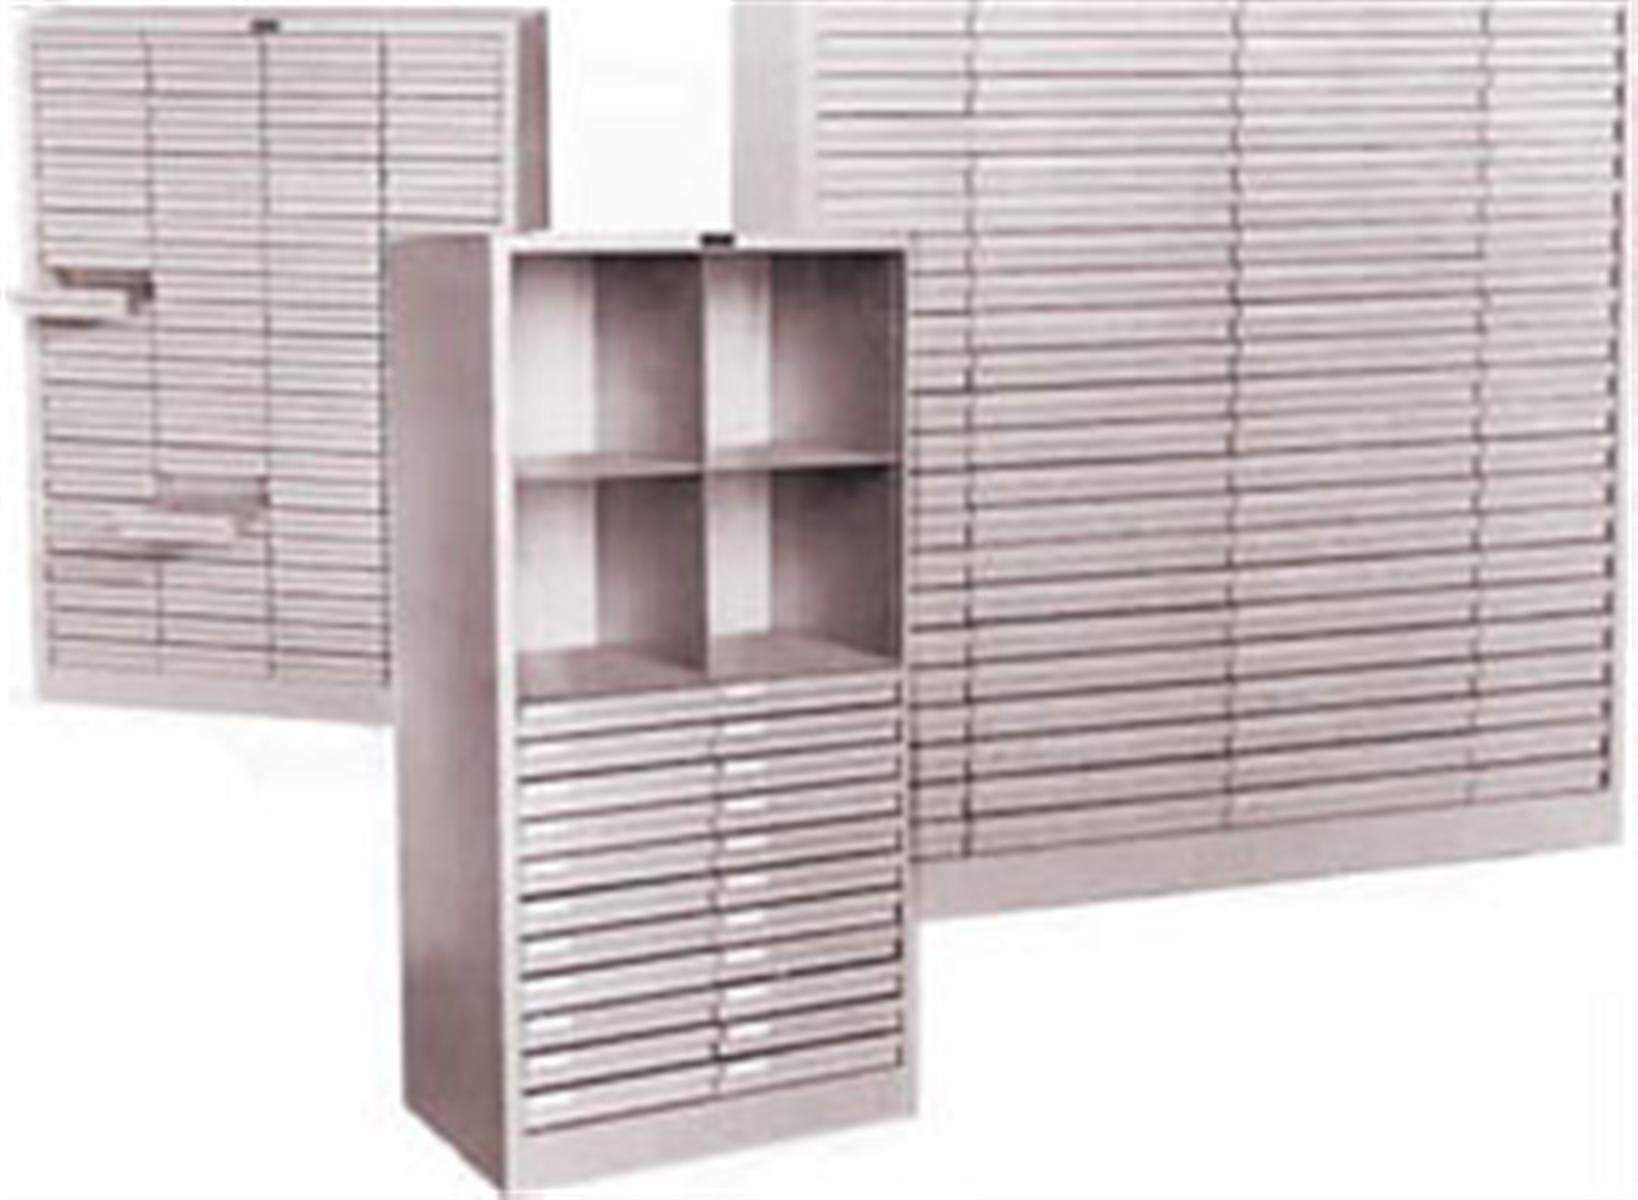 Sheet Music Shelving | Music Equipment Cabinets and Storage Racks 